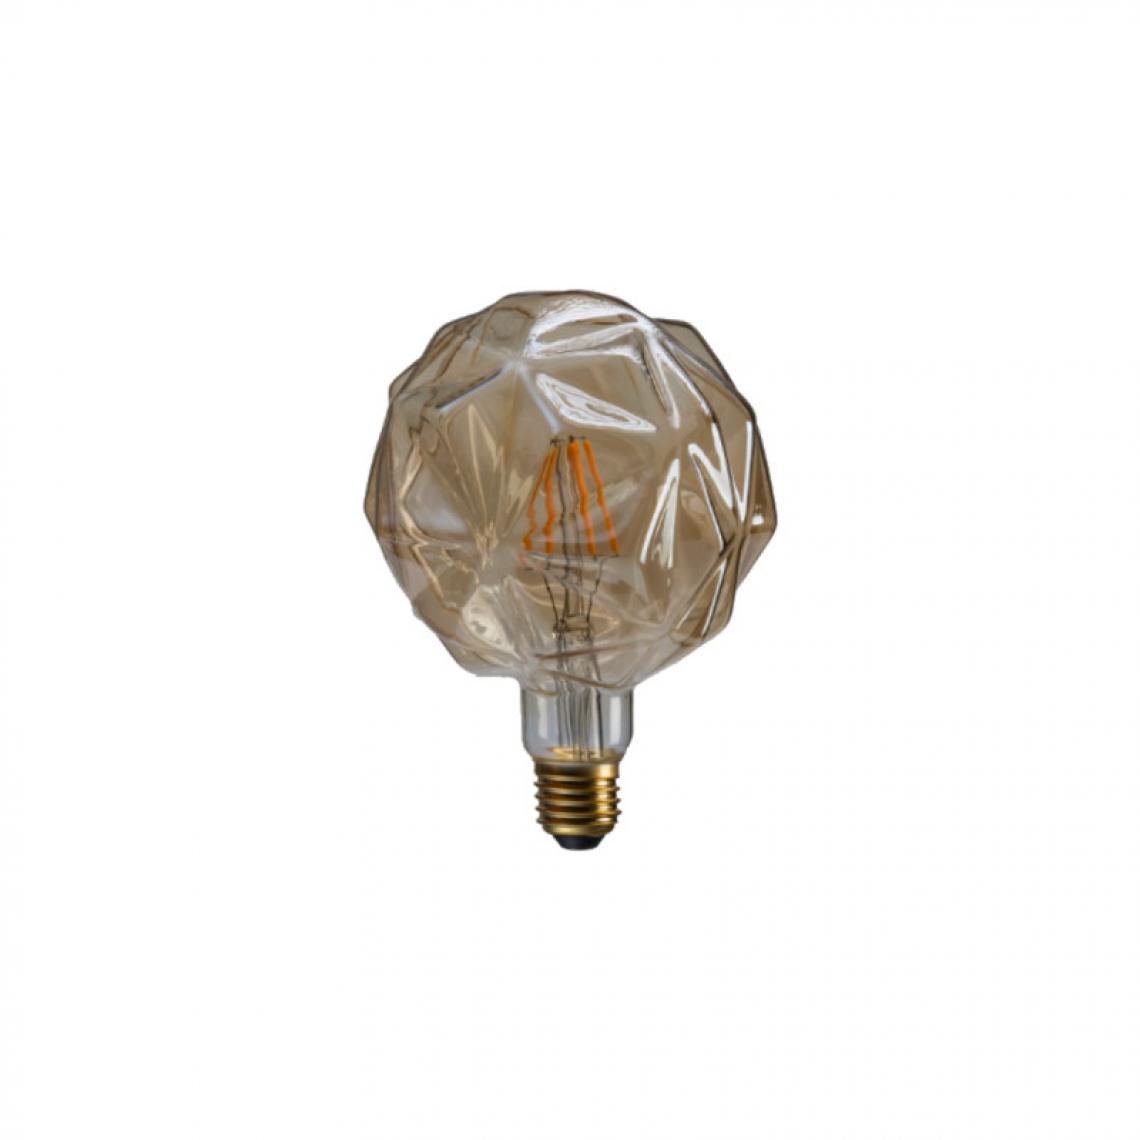 Xxcell - Ampoule LED rétro décorative ambrée XXCELL - 7 W - 720 lumens - 2700 K - E27 - Ampoules LED